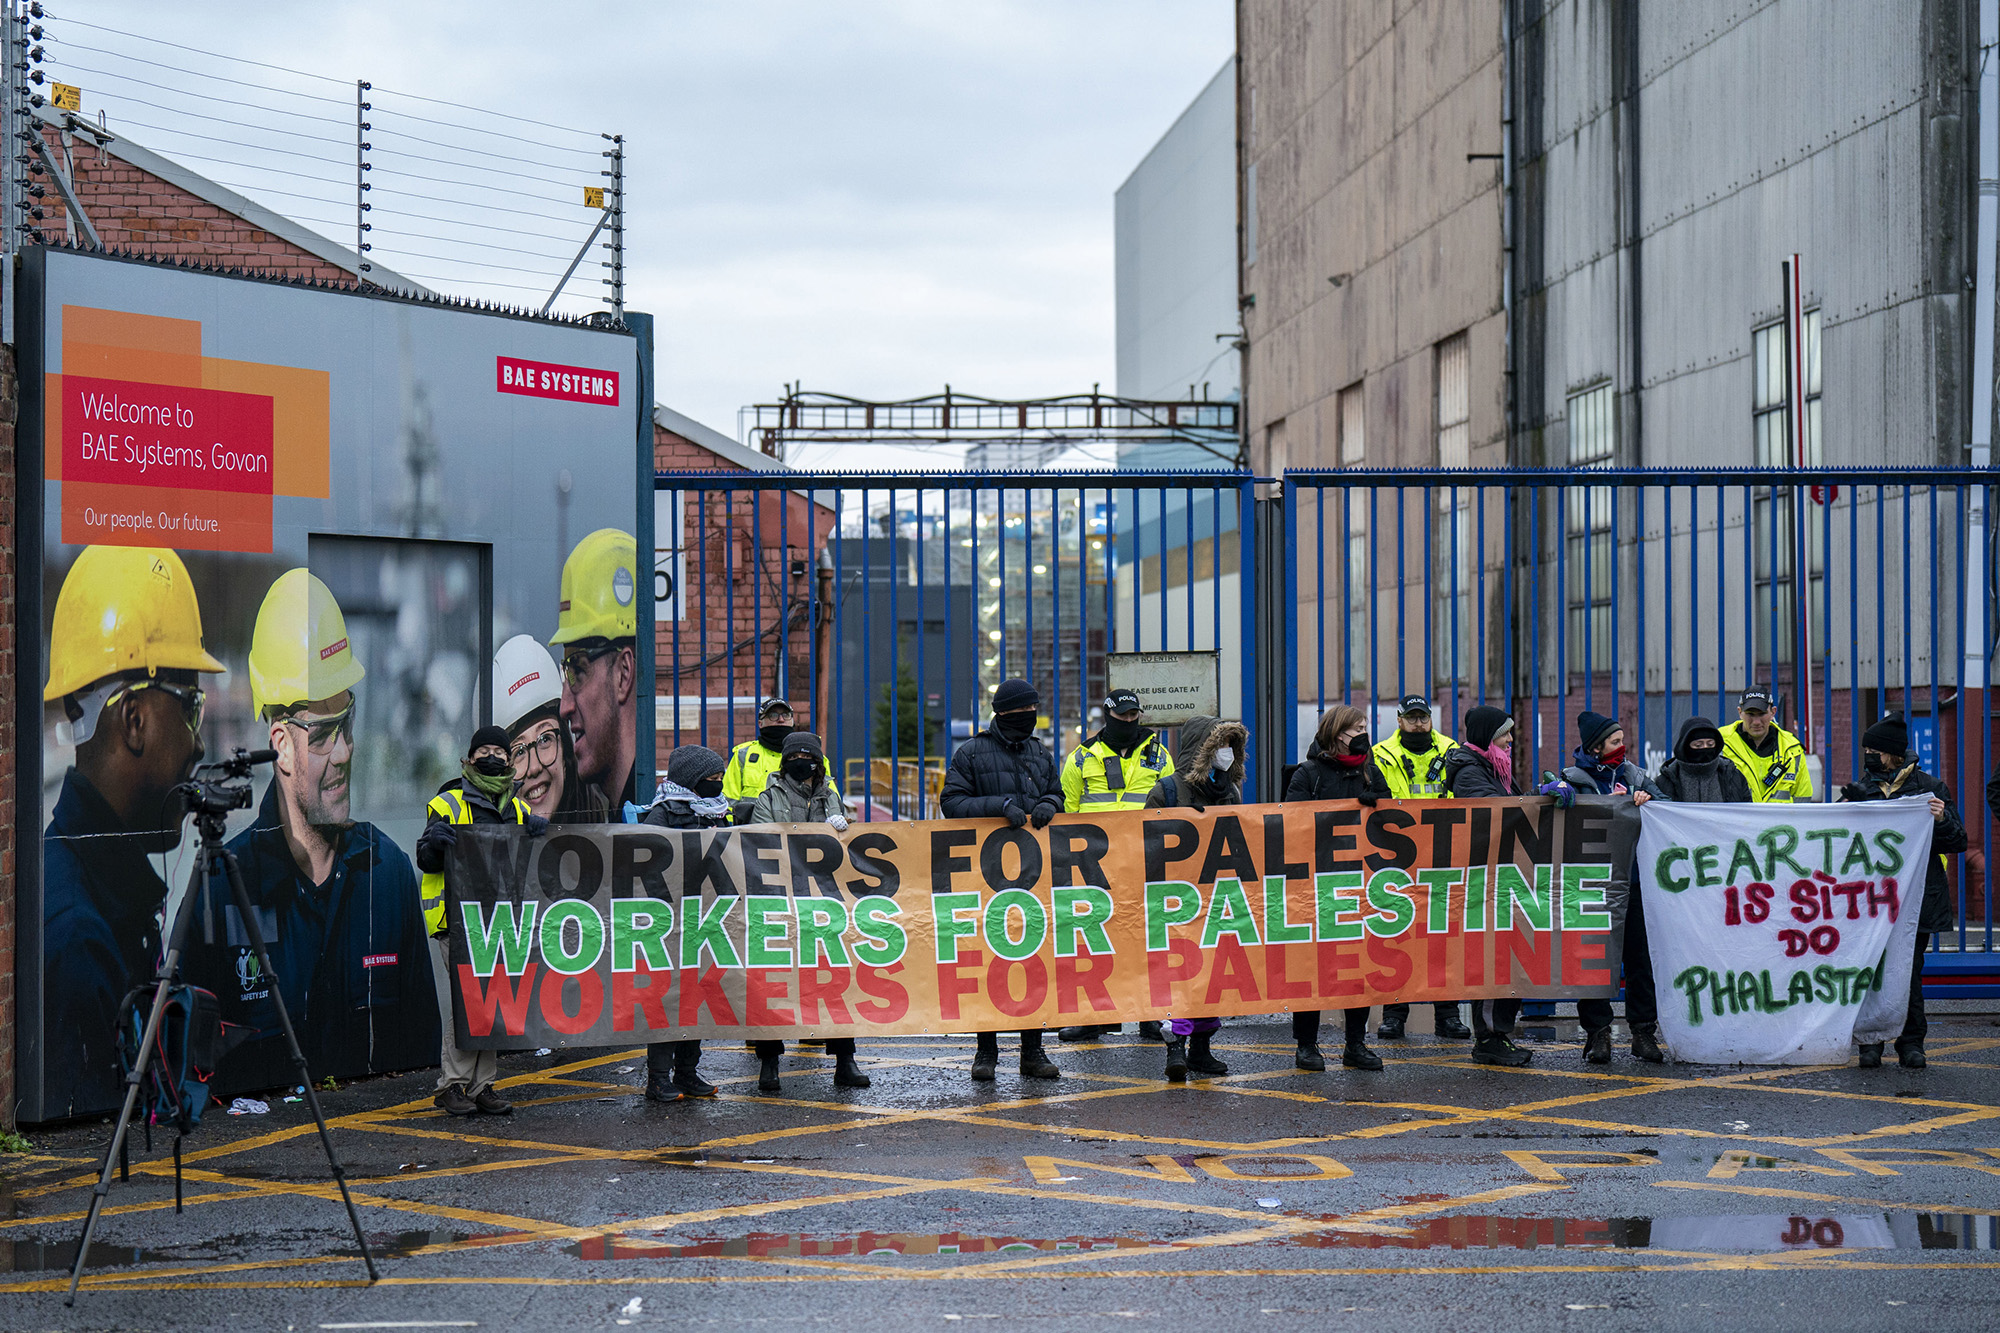 Los manifestantes forman un bloqueo frente a BAE Systems en Govan, Escocia, el 7 de diciembre.